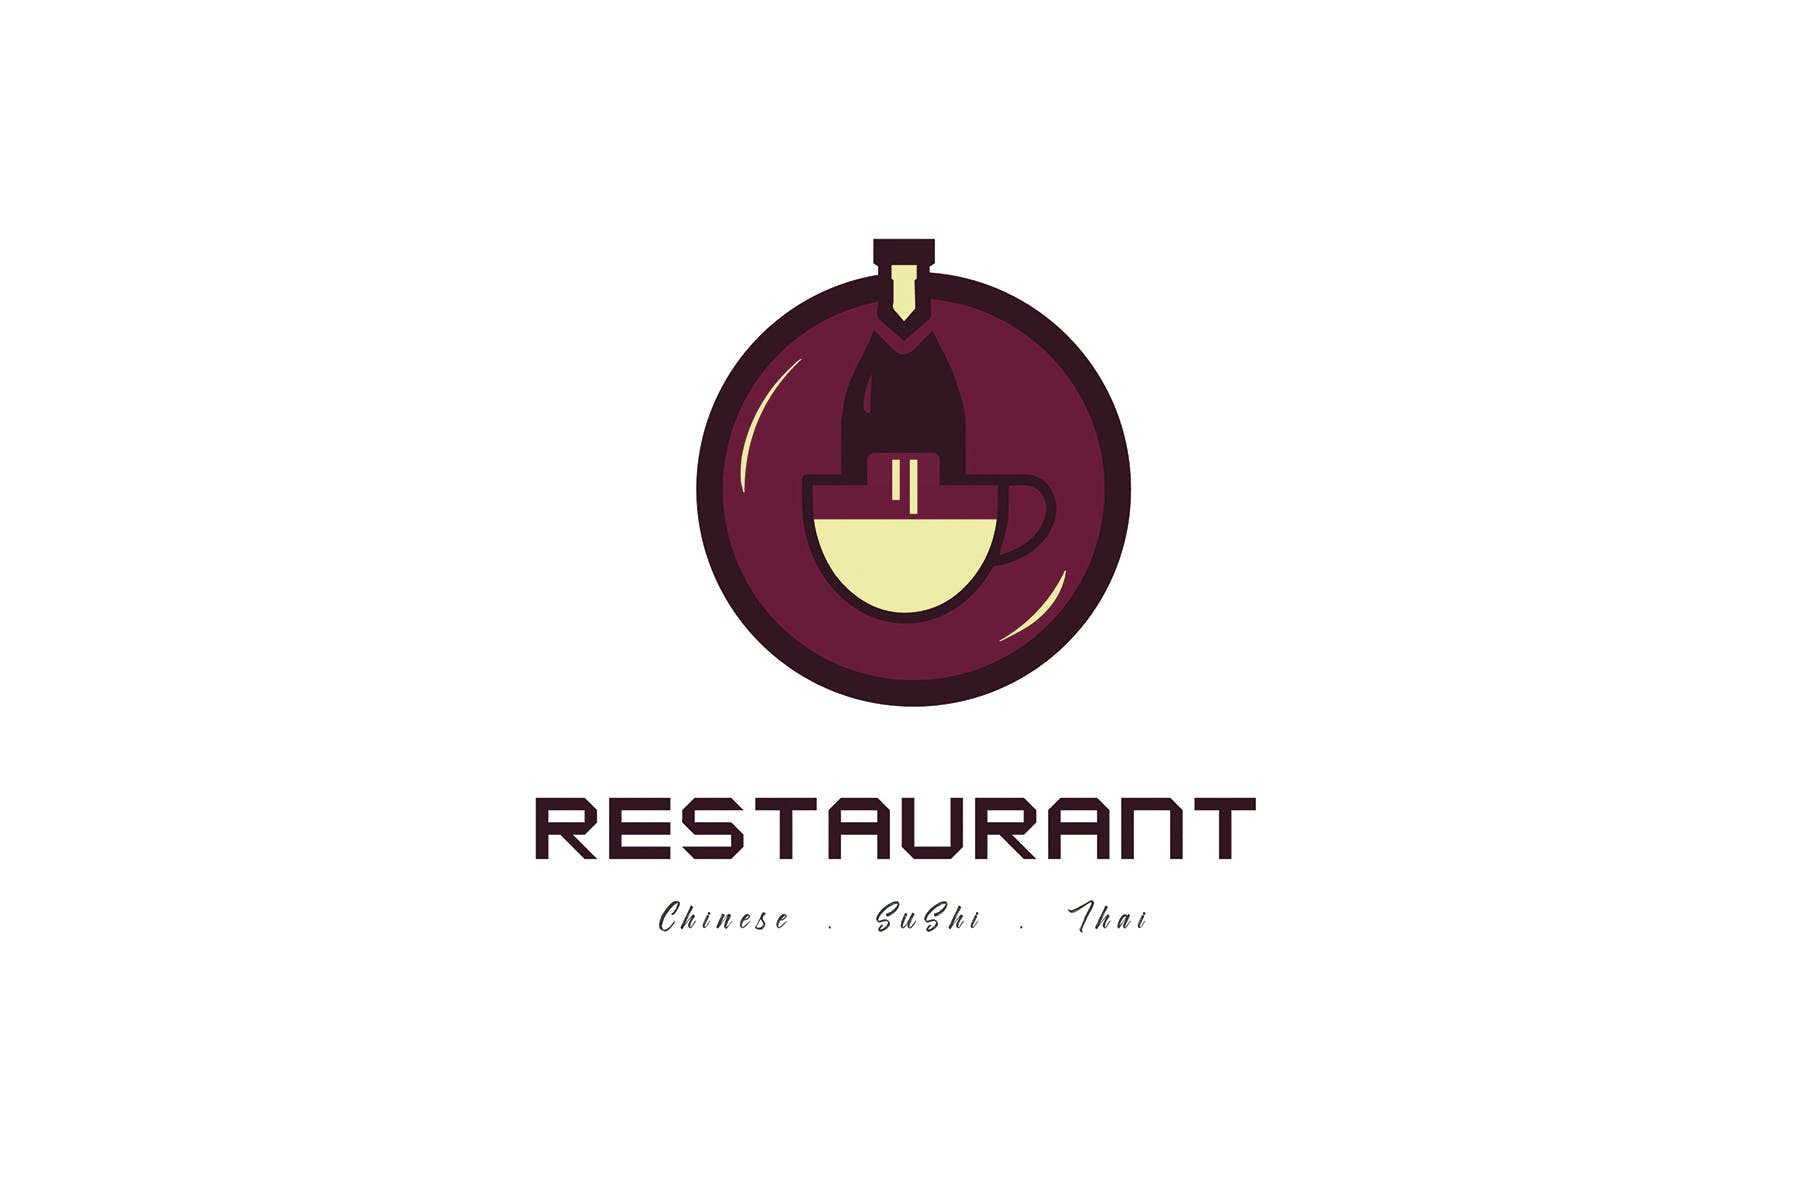 餐馆定制Logo设计蚂蚁素材精选模板 Restaurant Logo Templates插图(1)